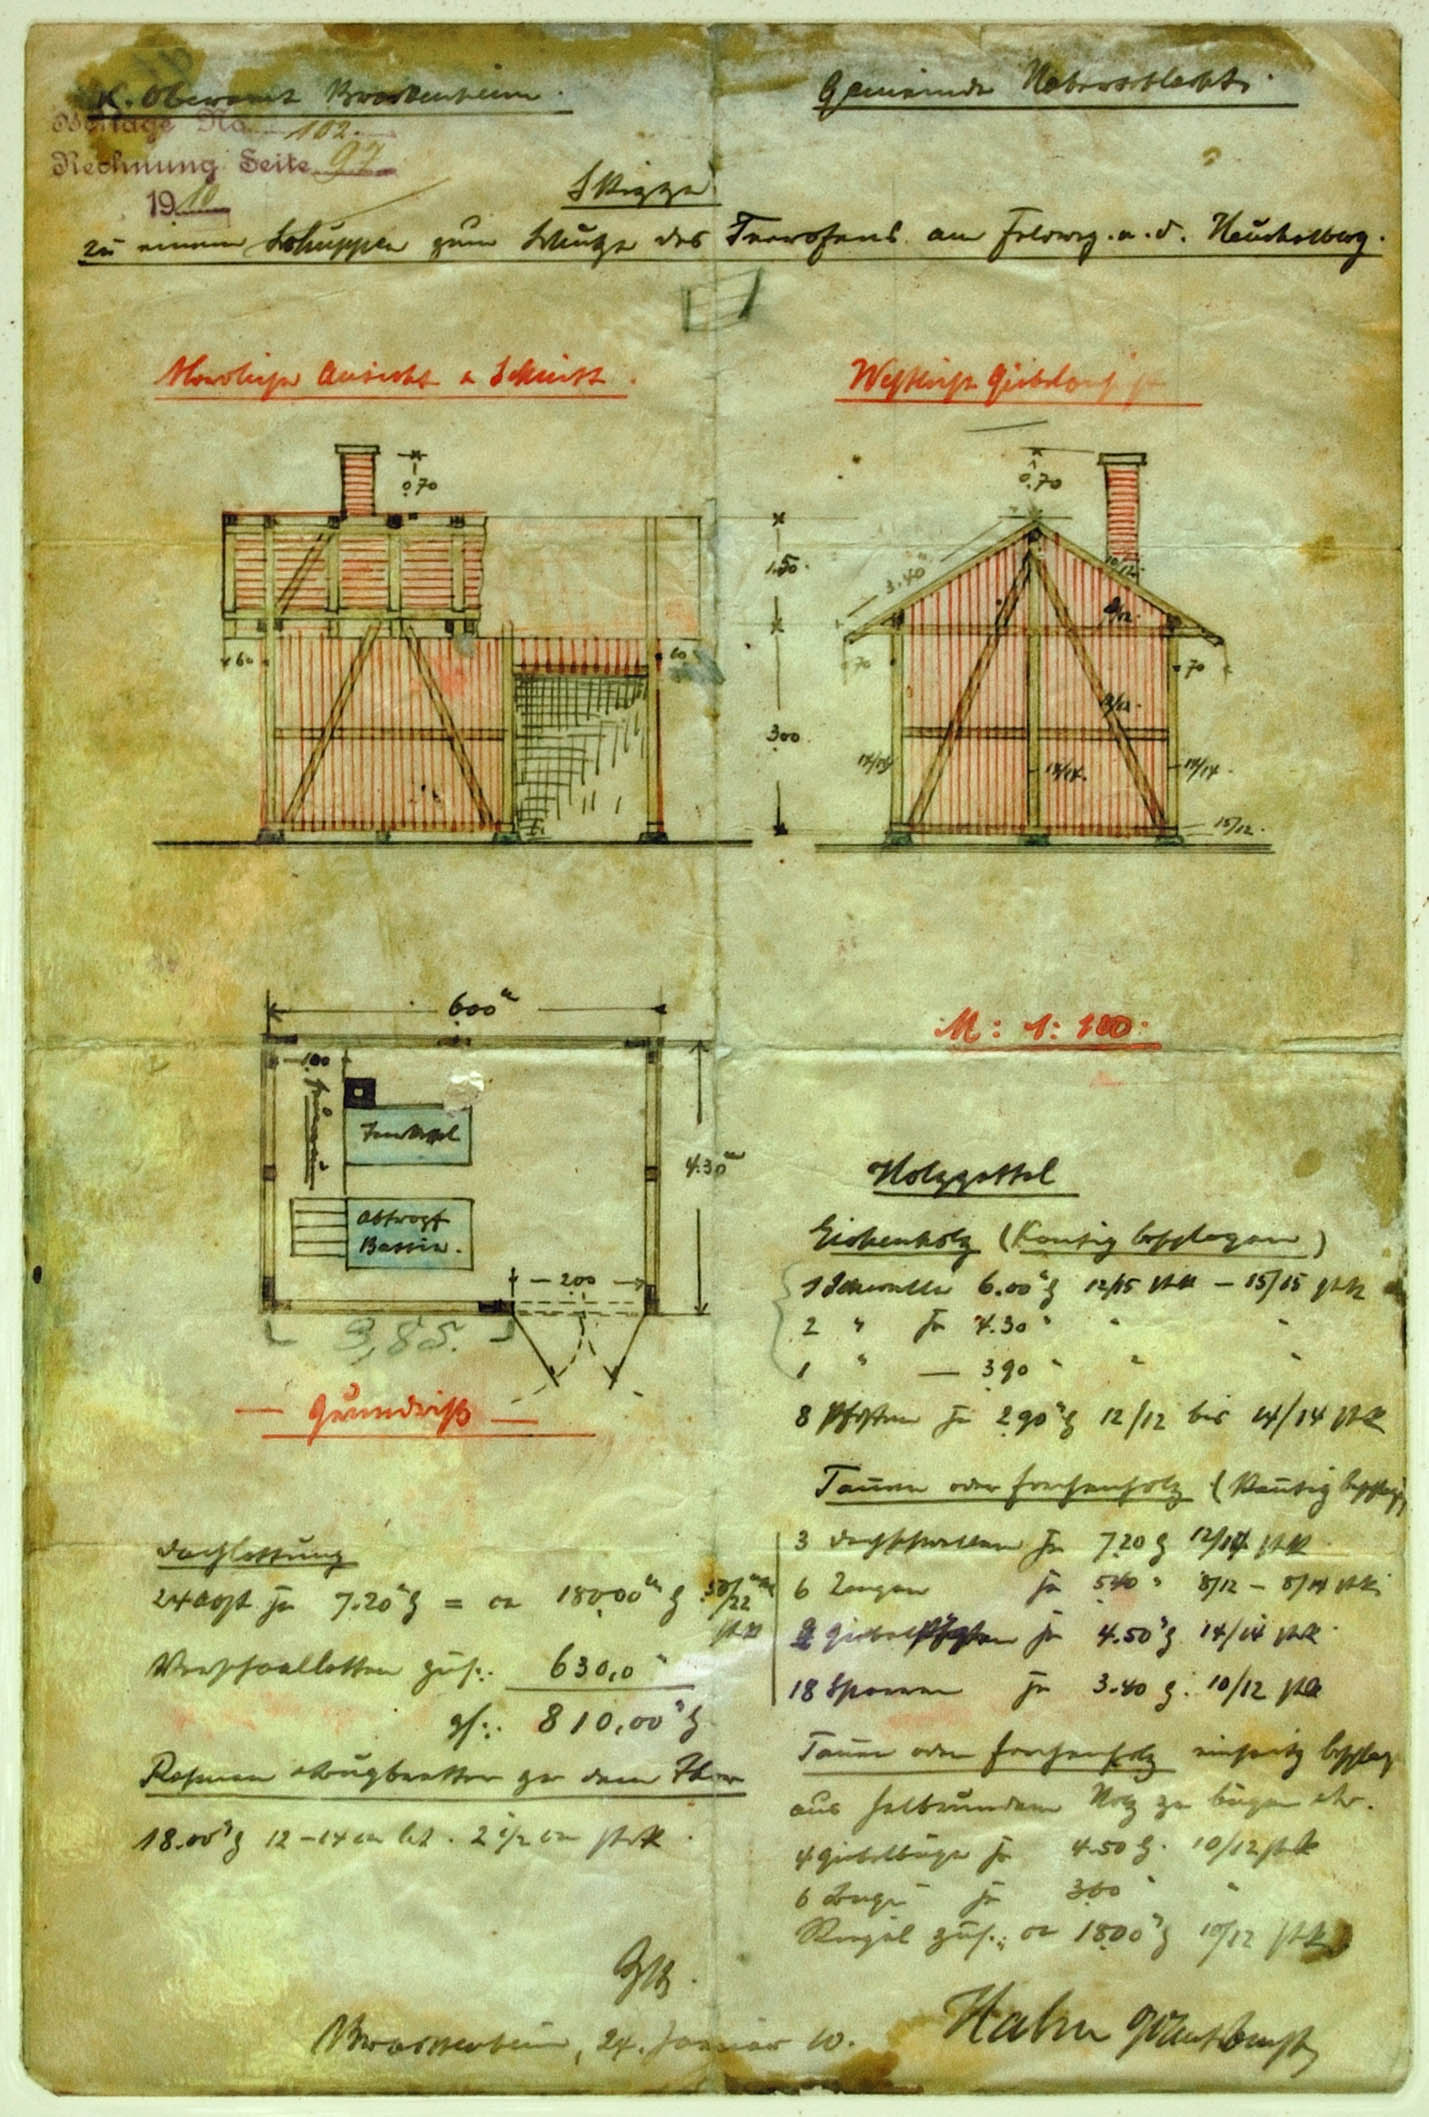 Plan des Oberamtsbaumeisters Hahn für die Überdachung der Teeranlage 1910 auf einer Infotafel zur Wiederinstandsetzung der Hütte. [Aufnahme: Landesarchiv BW]